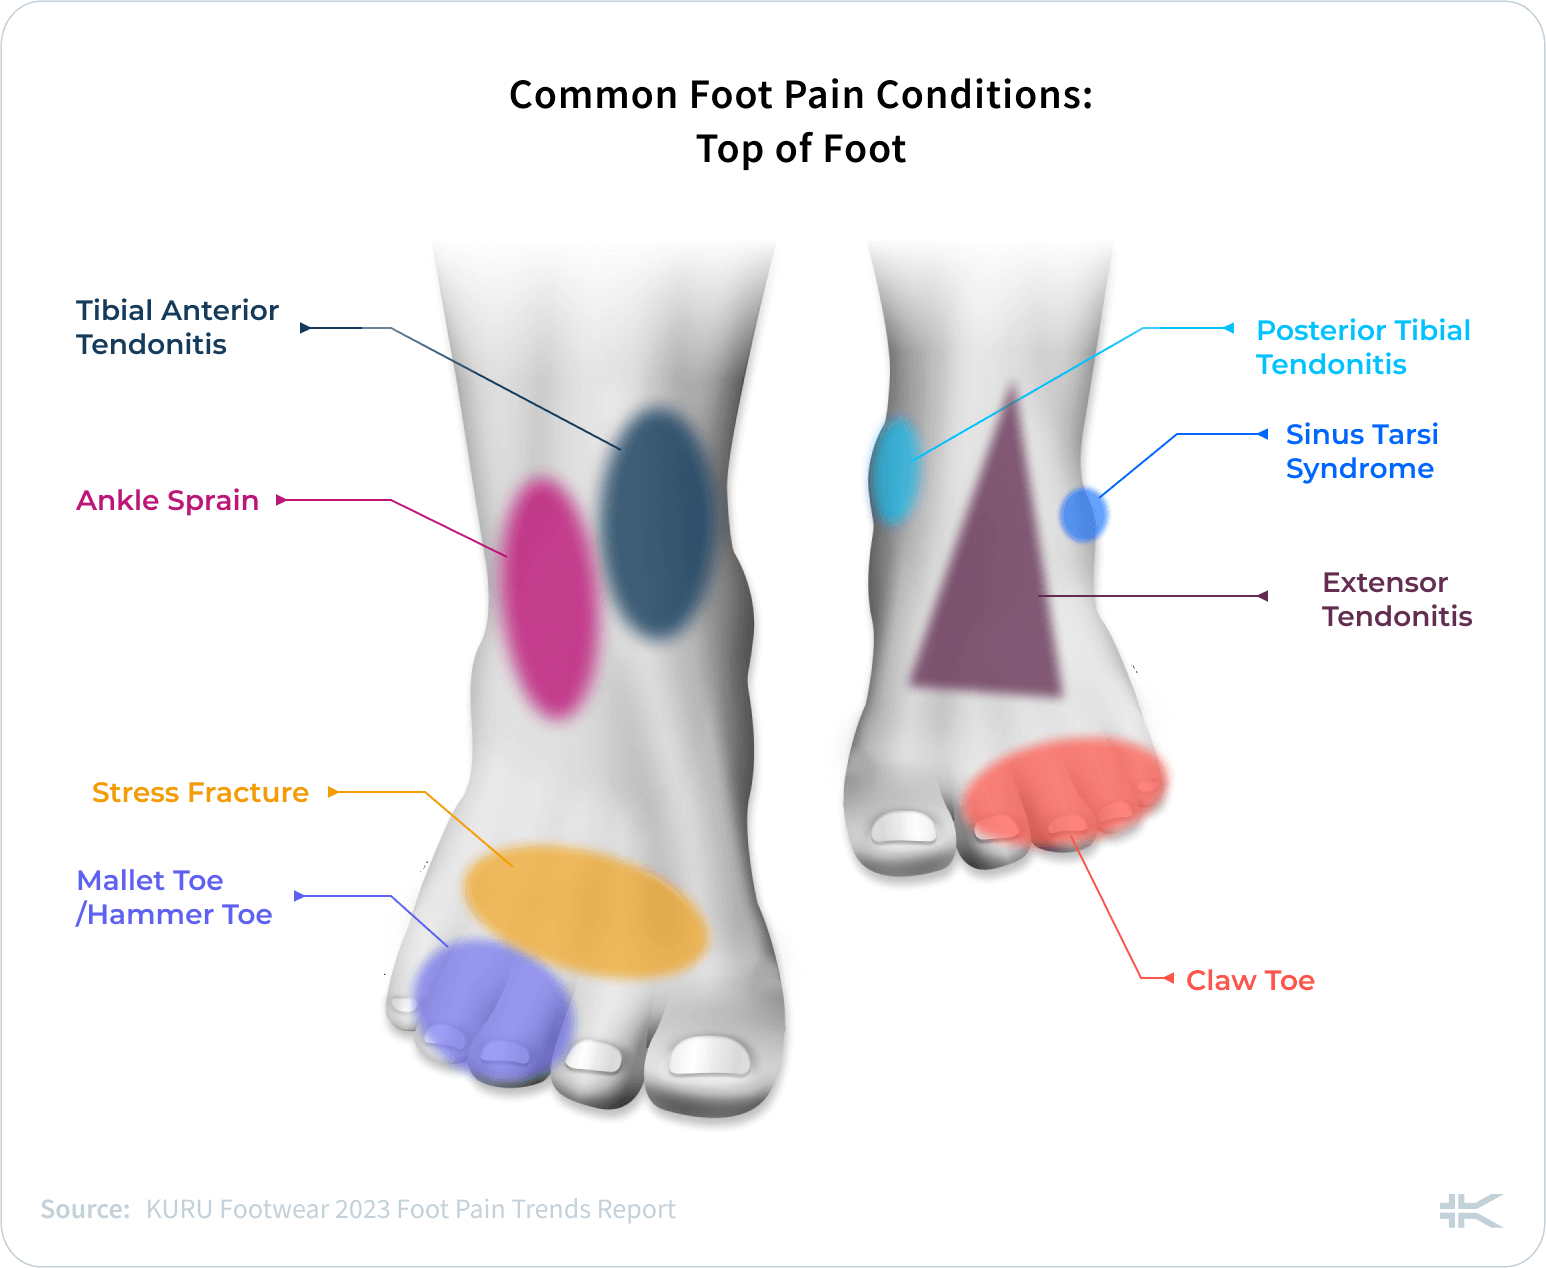 https://kuruexpertscorner.com/wp-content/uploads/2023/04/Common-Foot-Pain-Conditions_-Top-of-Foot-1200x984.png